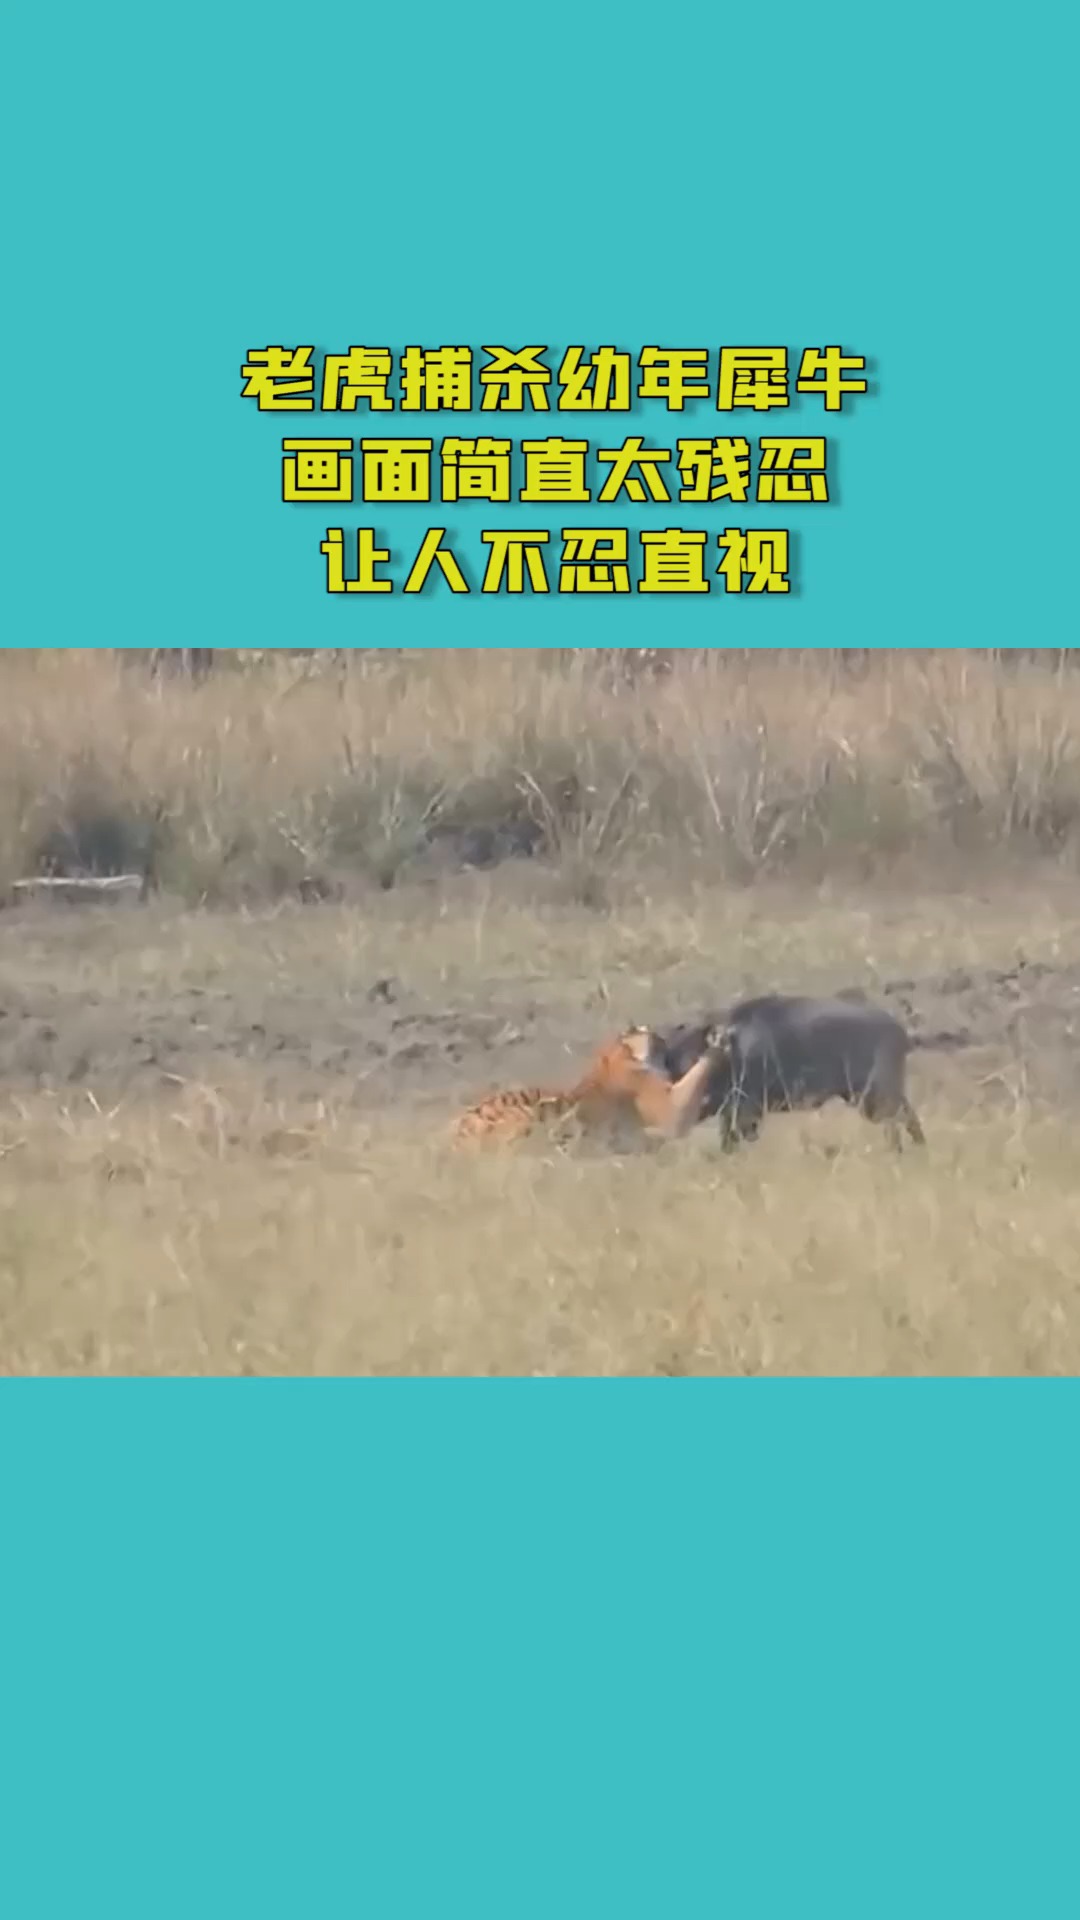 老虎捕杀幼年犀牛画面简直太残忍让人不忍直视